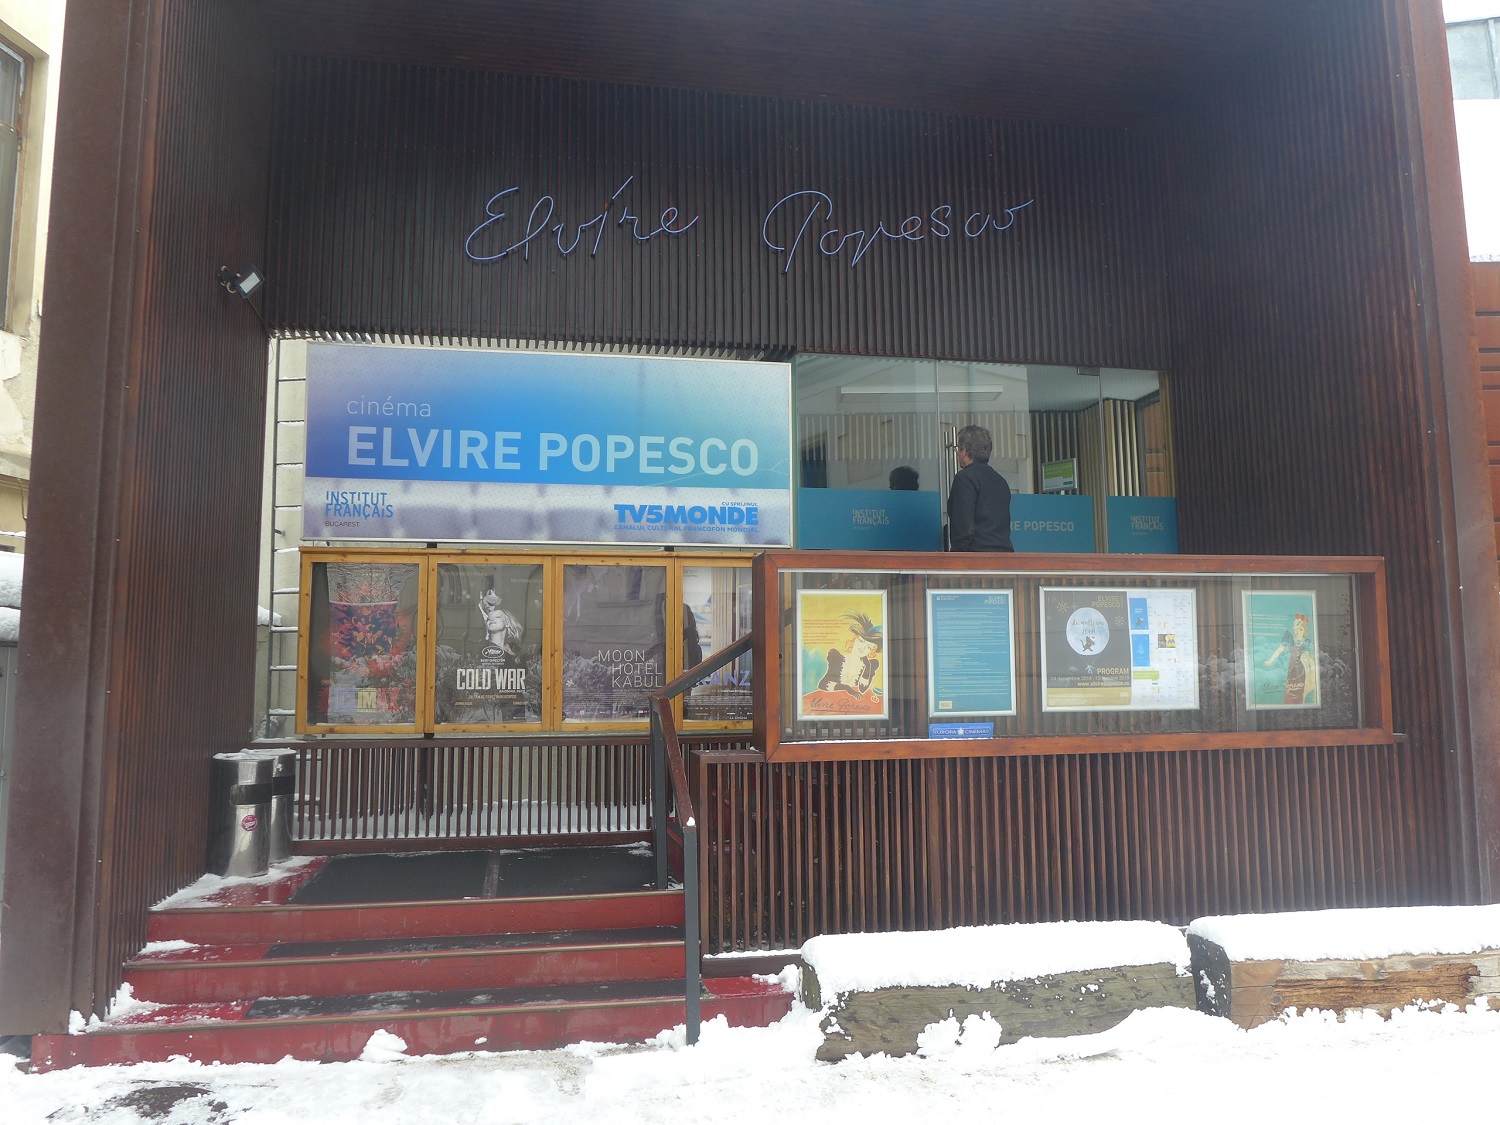 Derrière l’institut, il y a une salle de cinéma, qui attire beaucoup de spectateurs. Il s’appelle Elvire Popesco, du nom d’une actrice franco-roumaine du XXe siècle.